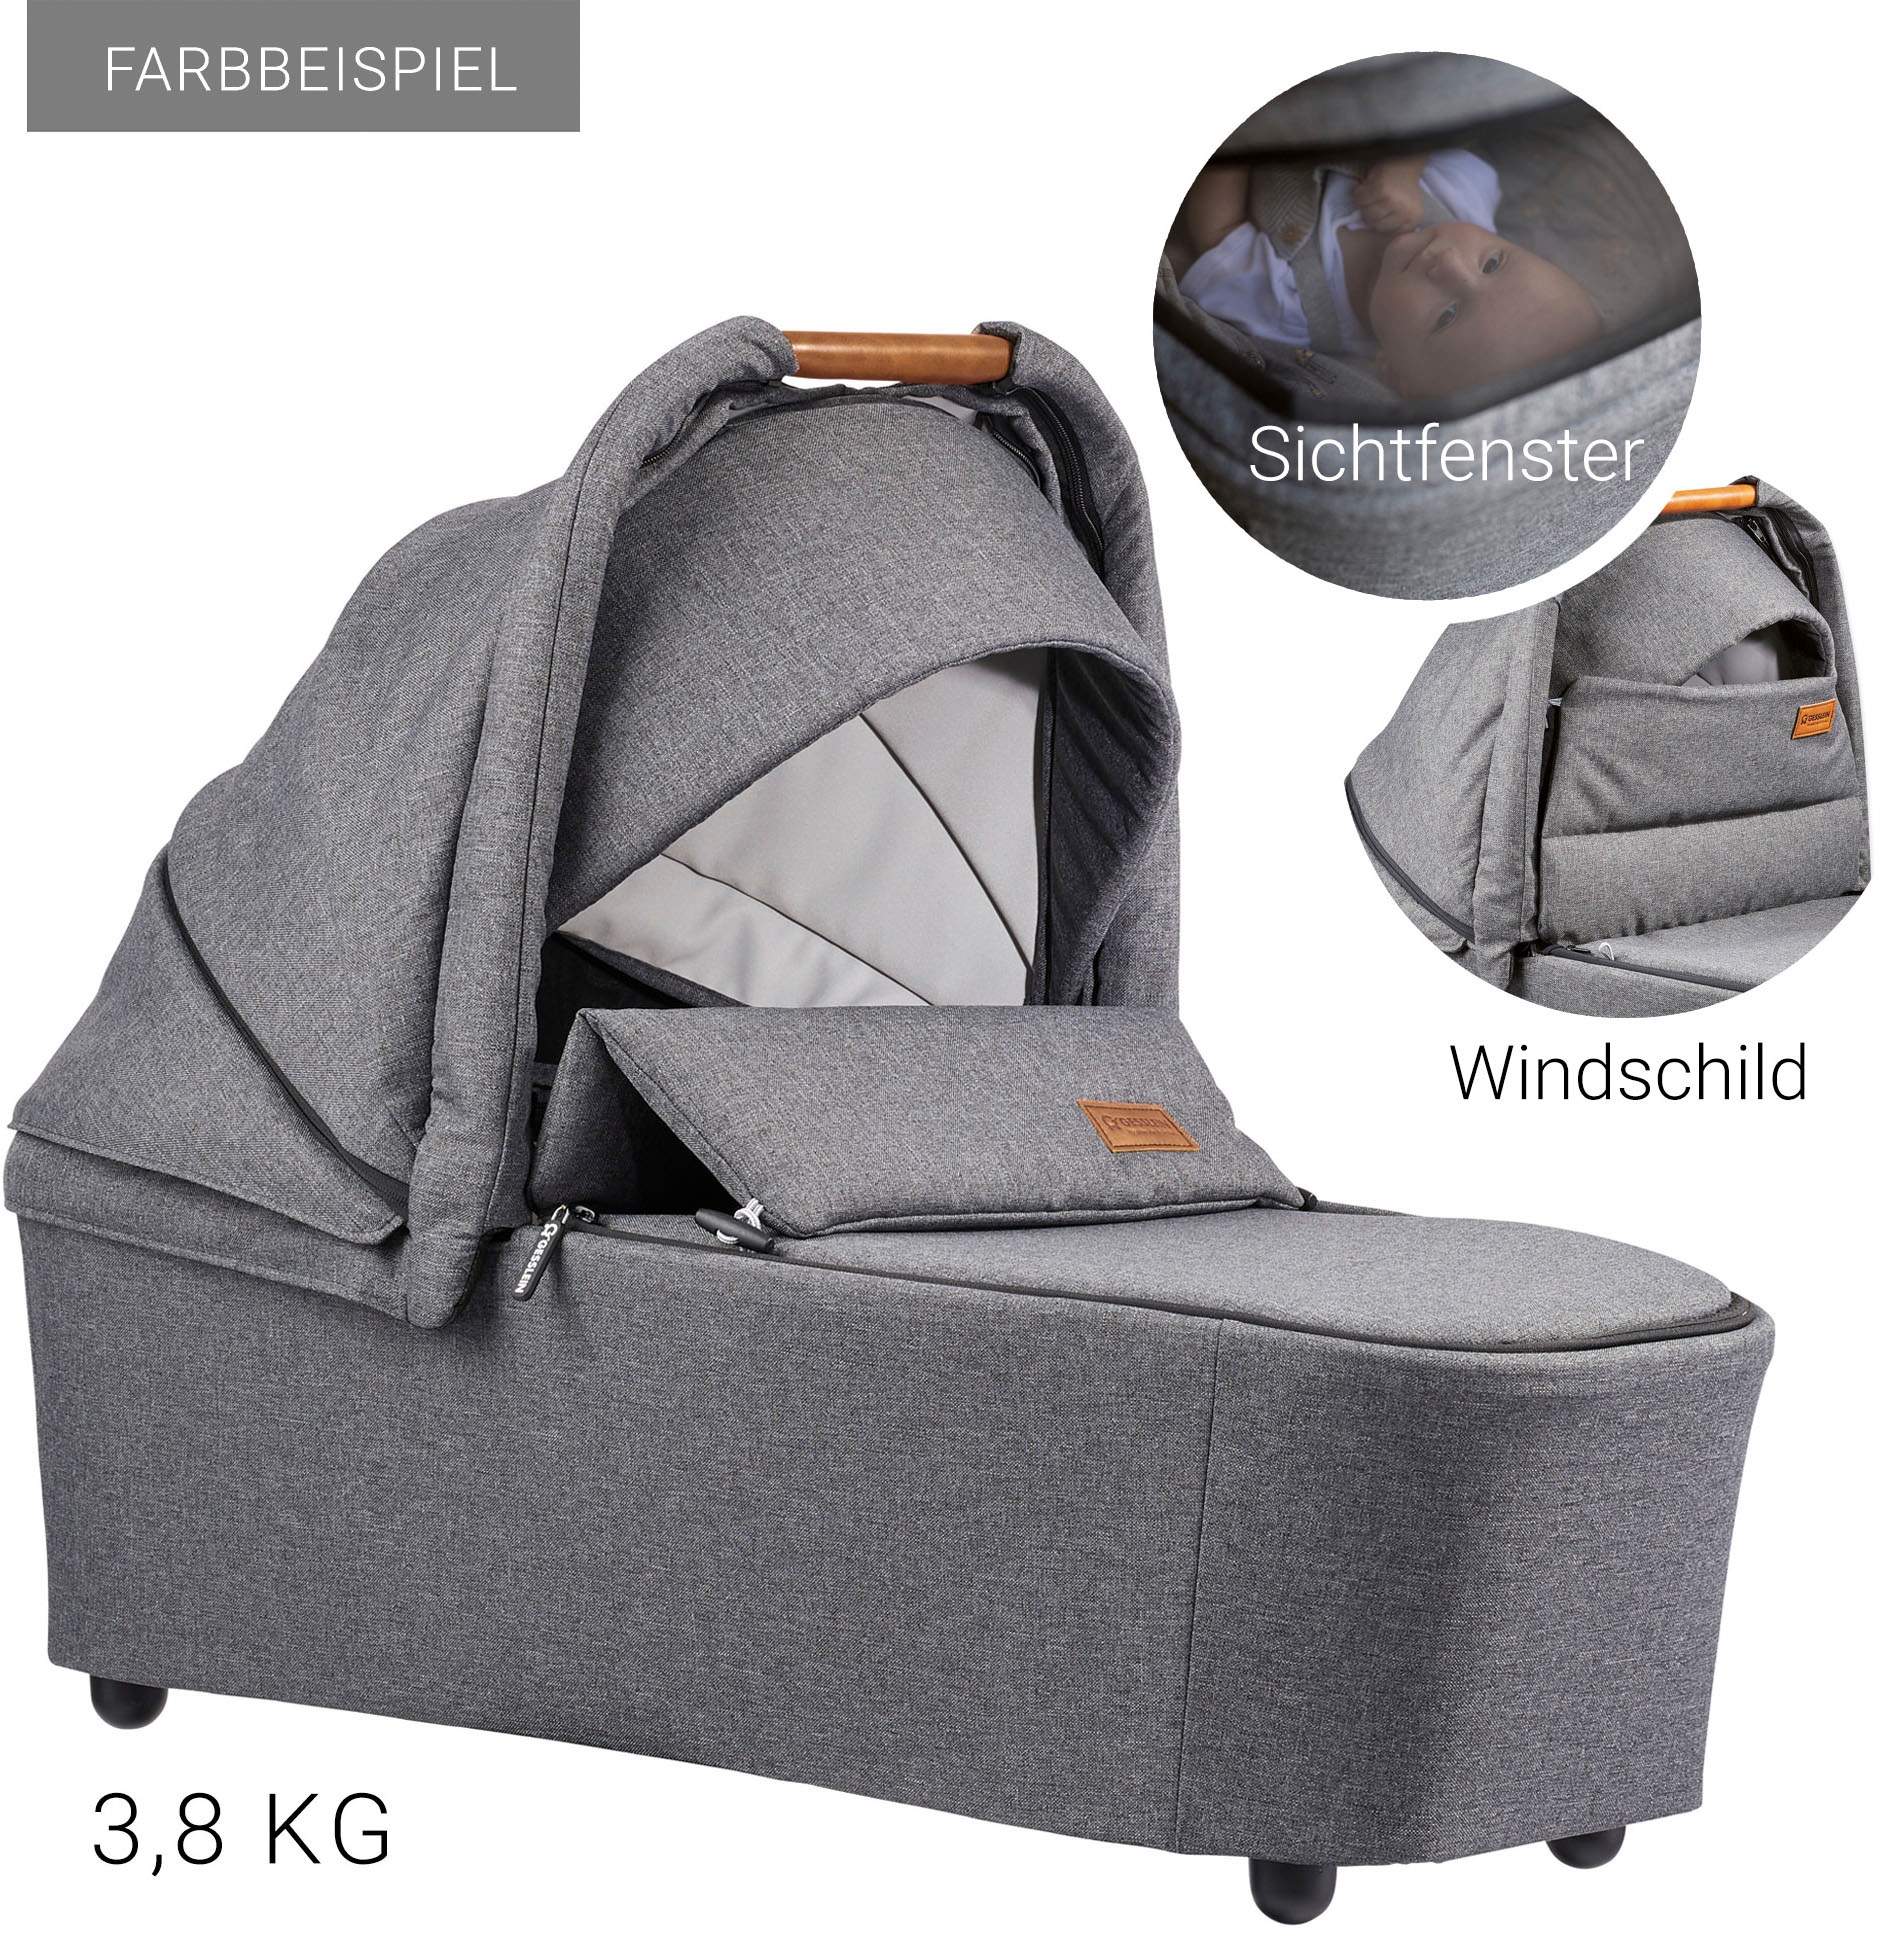 Gesslein Kombi-Kinderwagen »FX4 Soft+ mit Aufsatz Swing schwarz, aqua mint«, mit Babywanne C3 und Babyschalenadapter